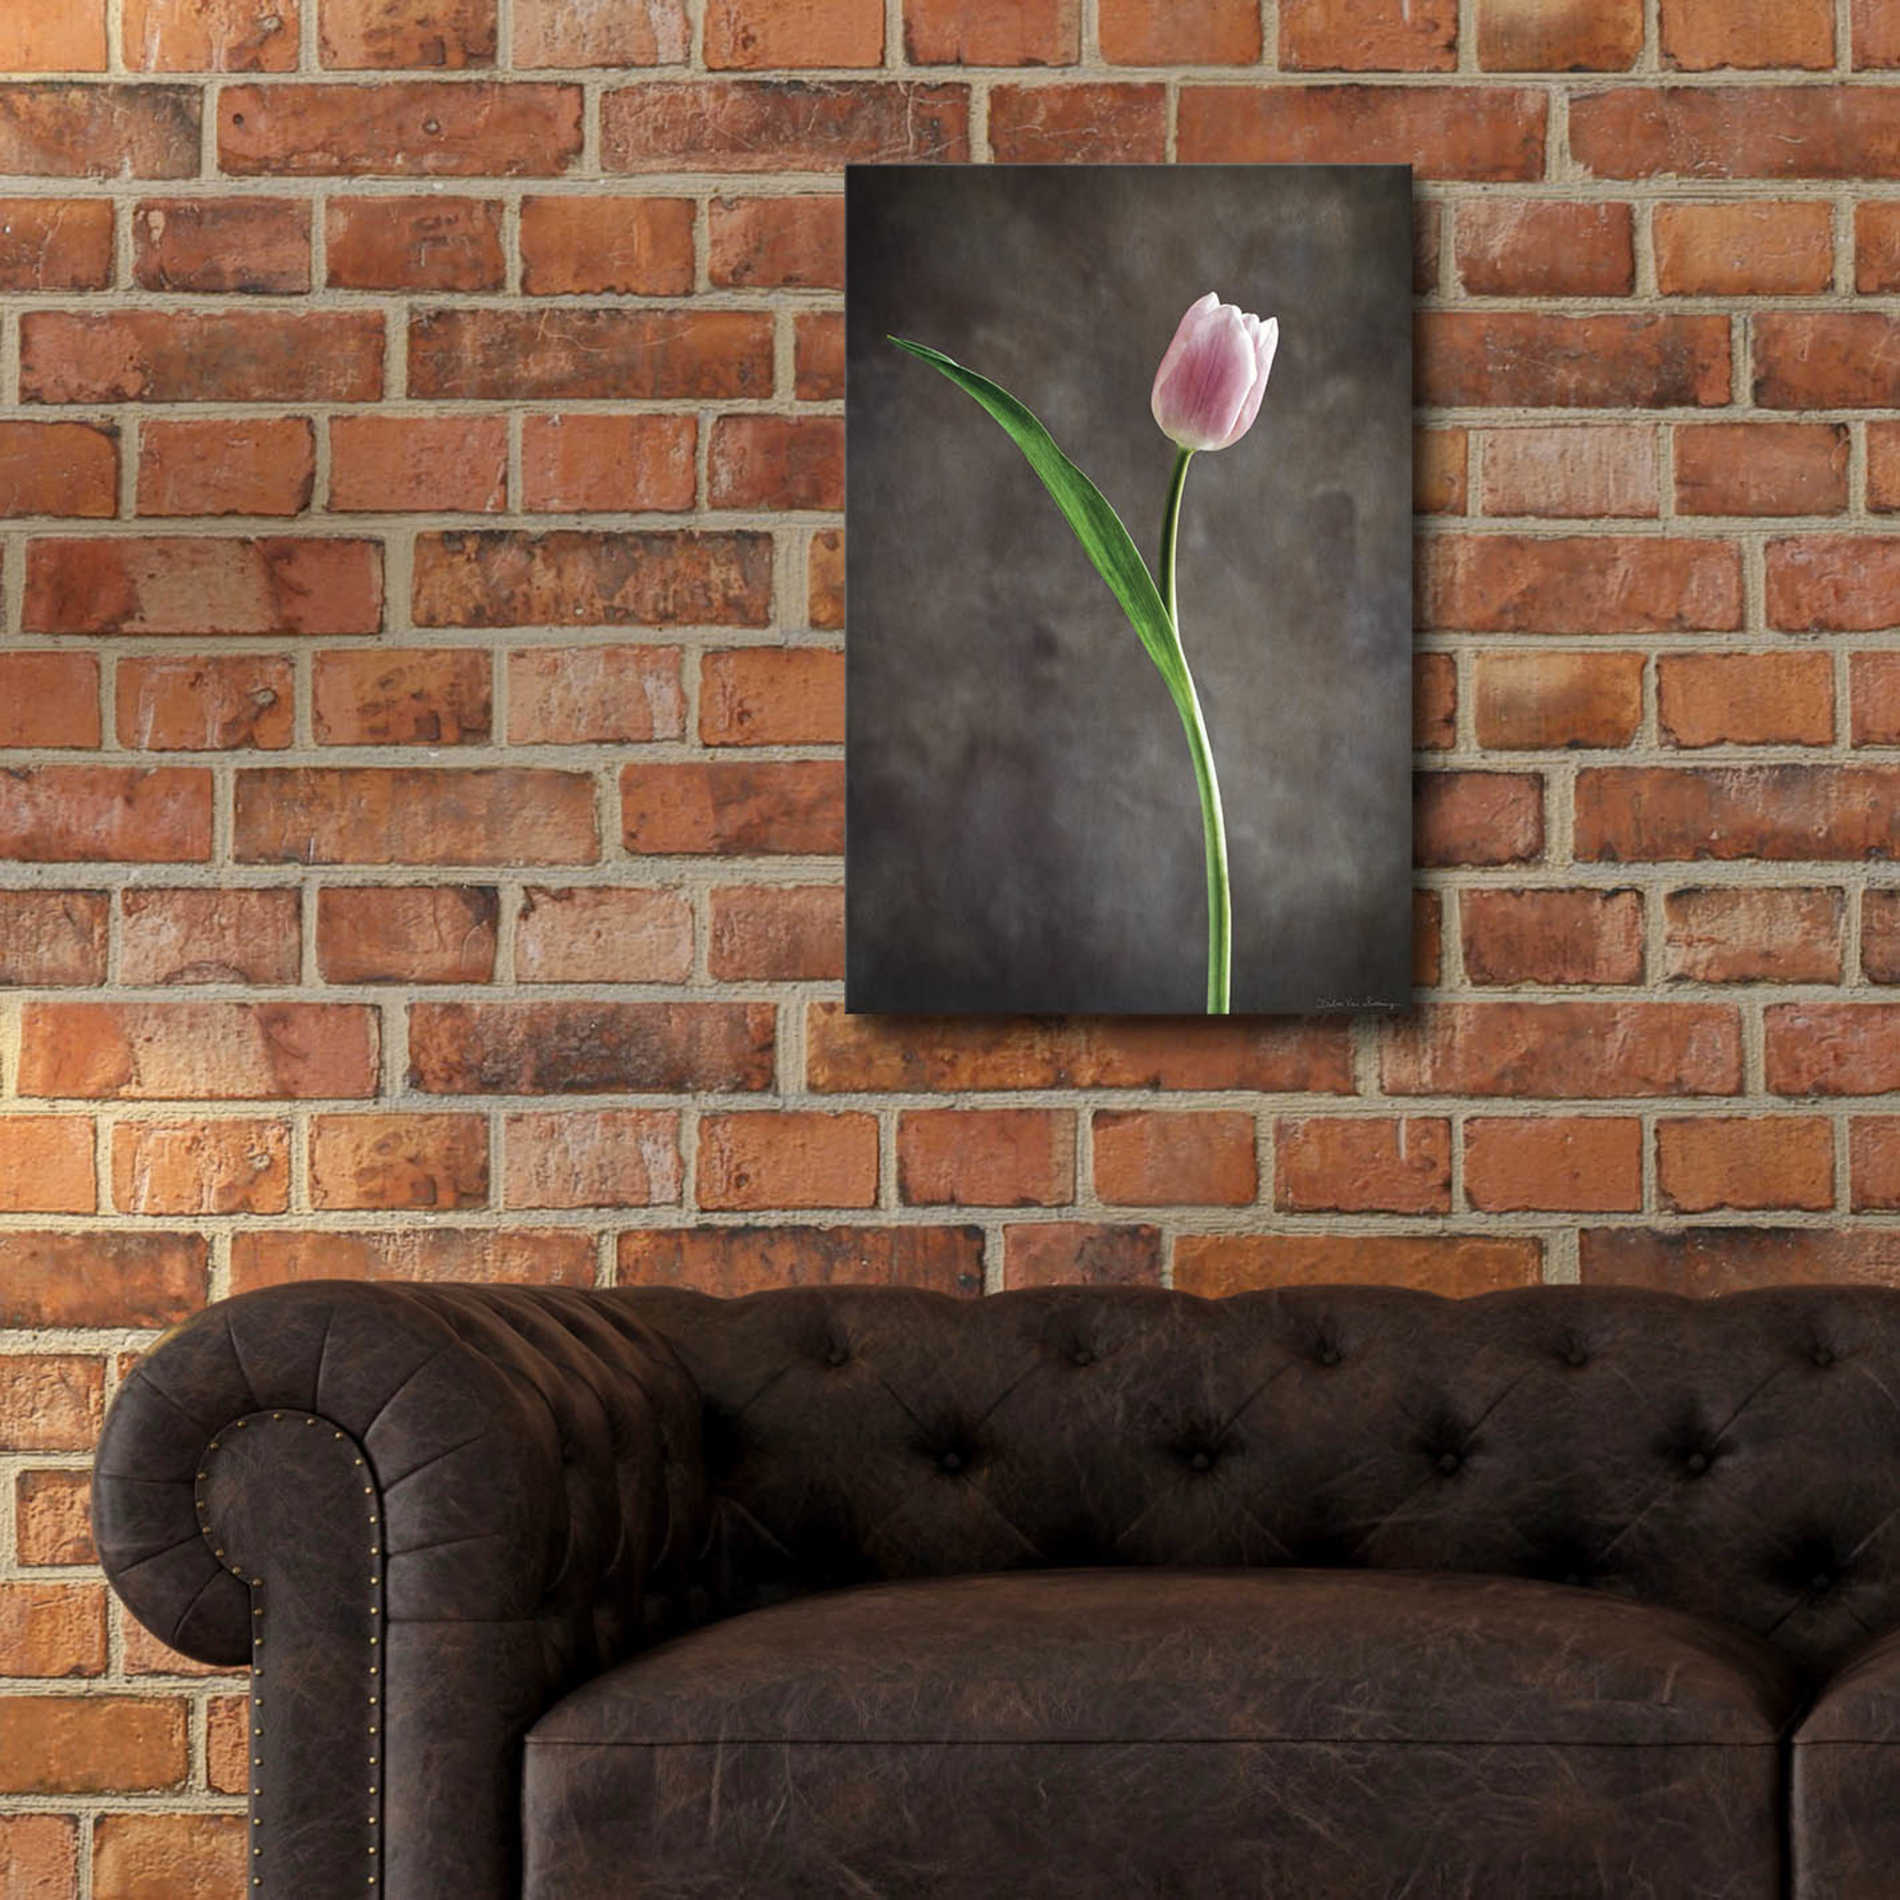 Epic Art 'Spring Tulips II' by Debra Van Swearingen, Acrylic Glass Wall Art,16x24